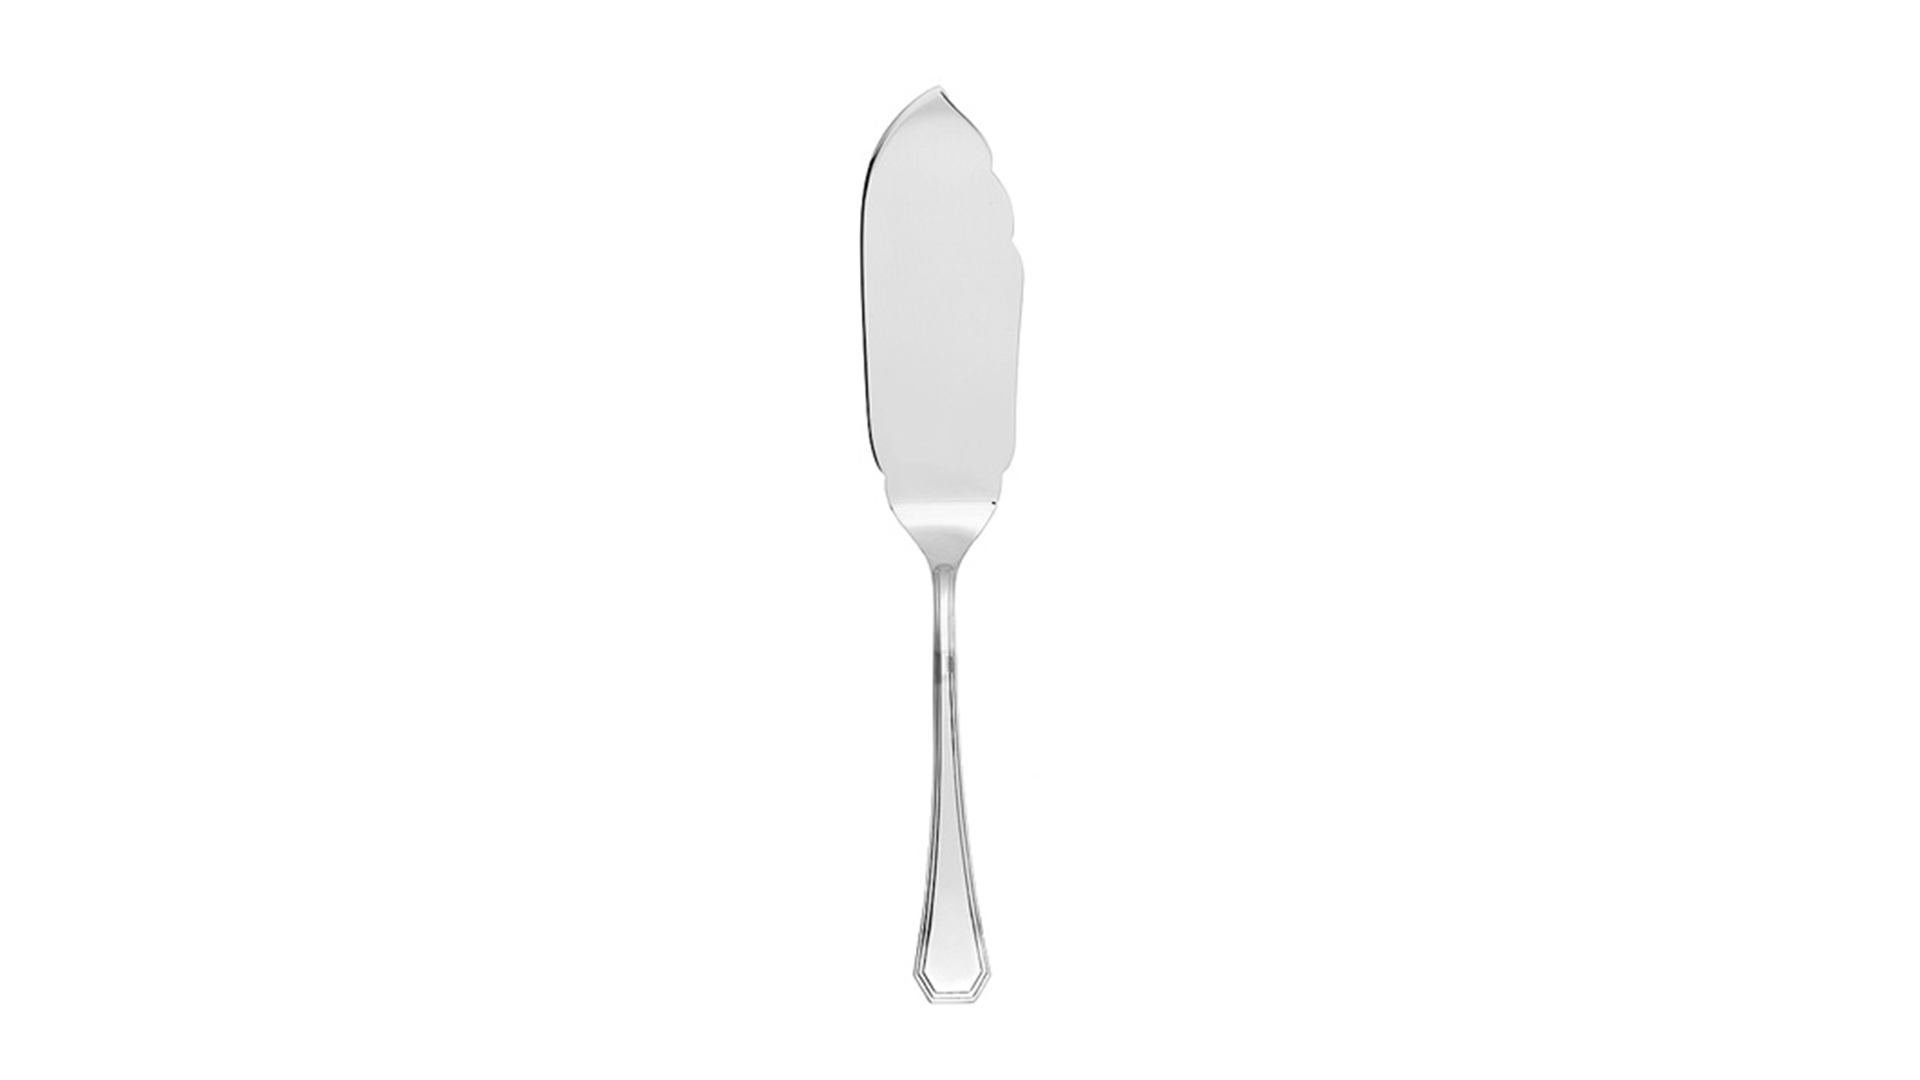 Нож для торта сервировочный 28 см Schiavon Оттагонале, серебро 925пр